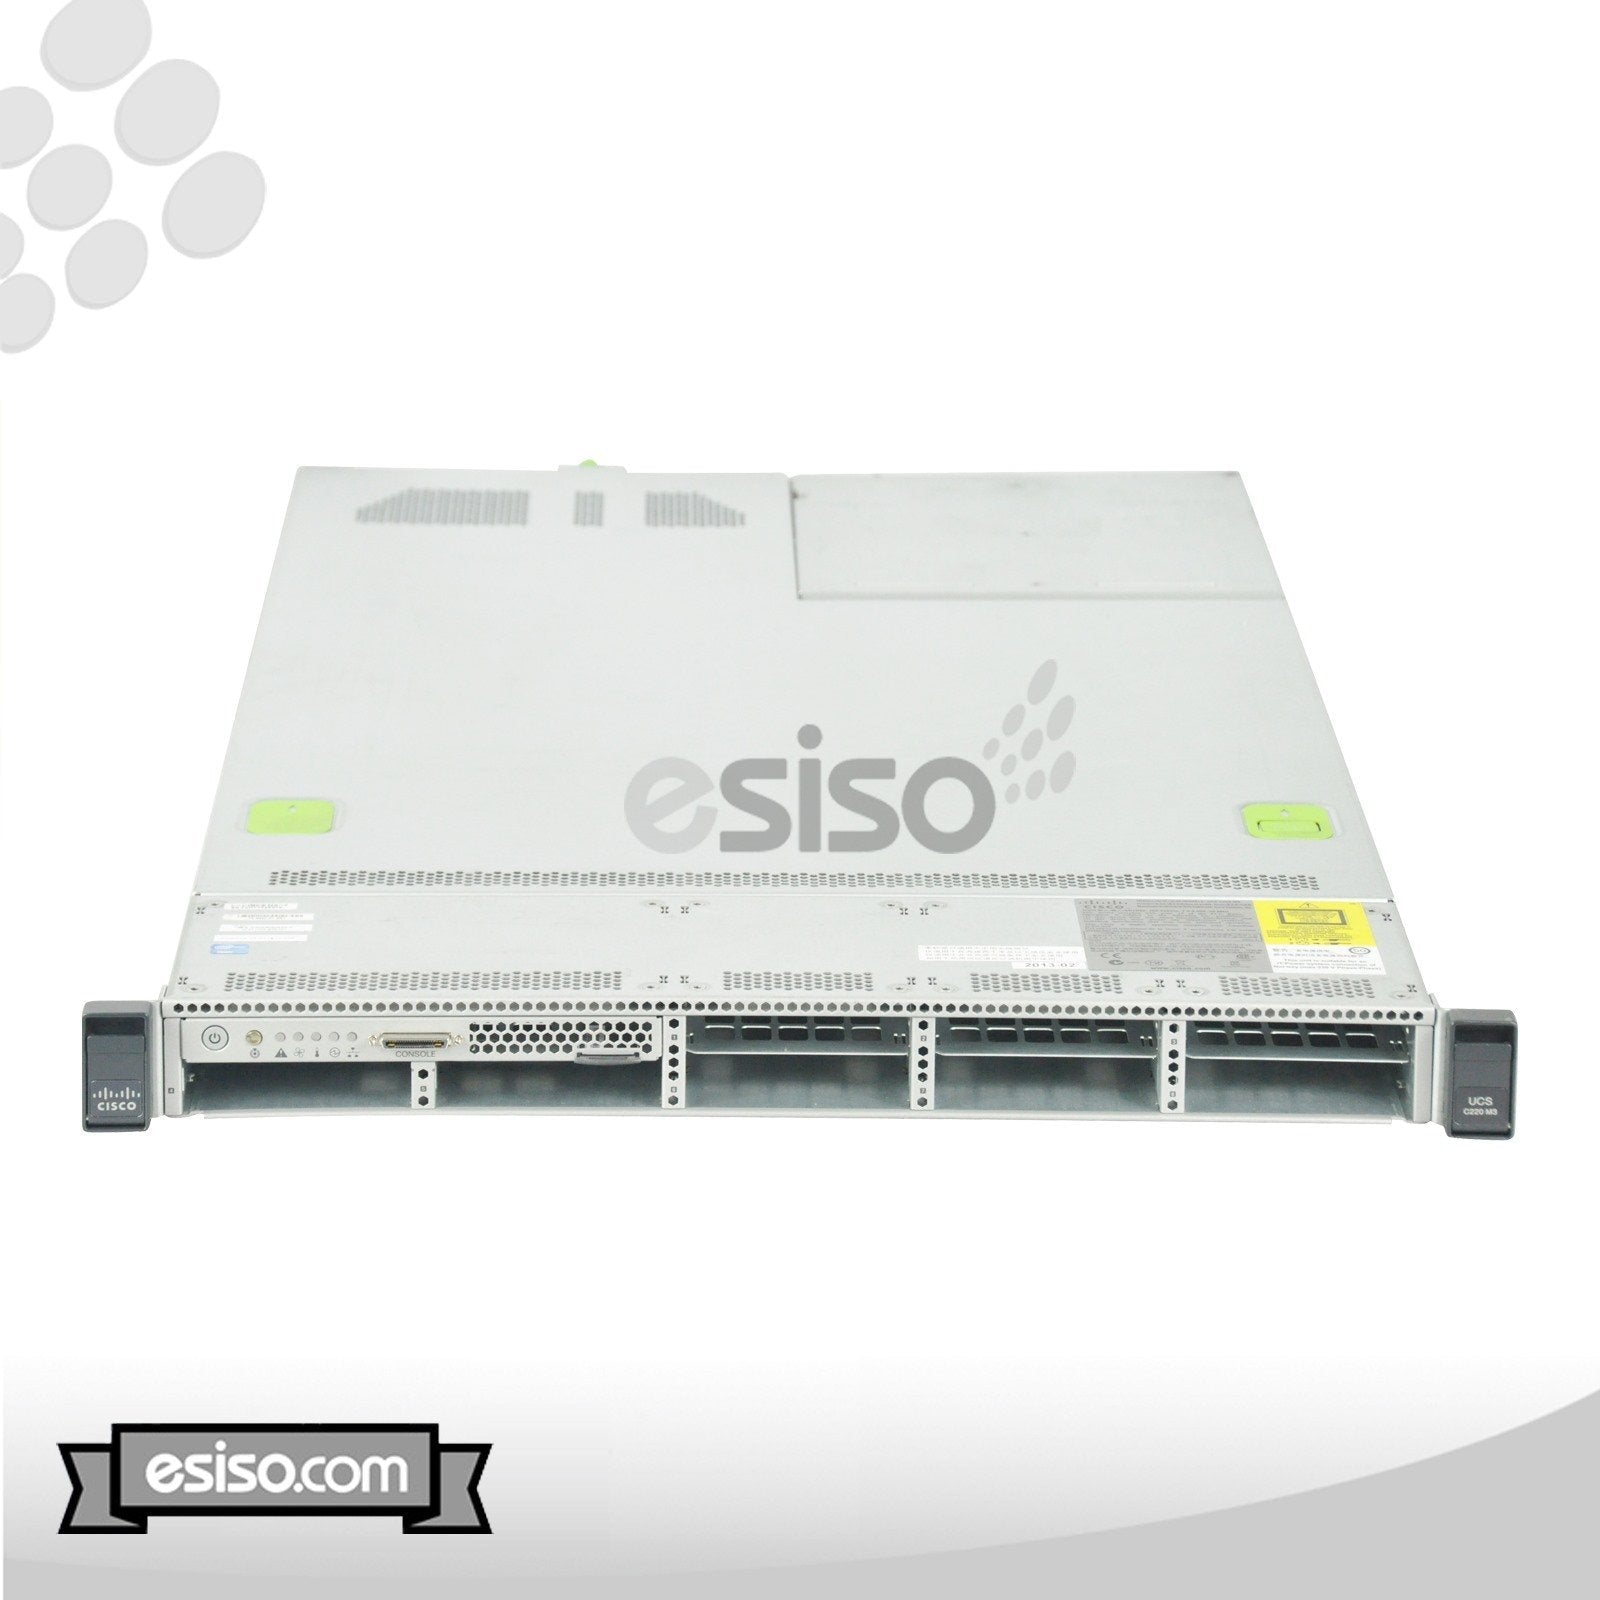 CISCO UCS C220 M3 8SFF SERVER 2x 8 CORE E5-2689 2.6GHz 64GB 4x 300GB 10K SAS